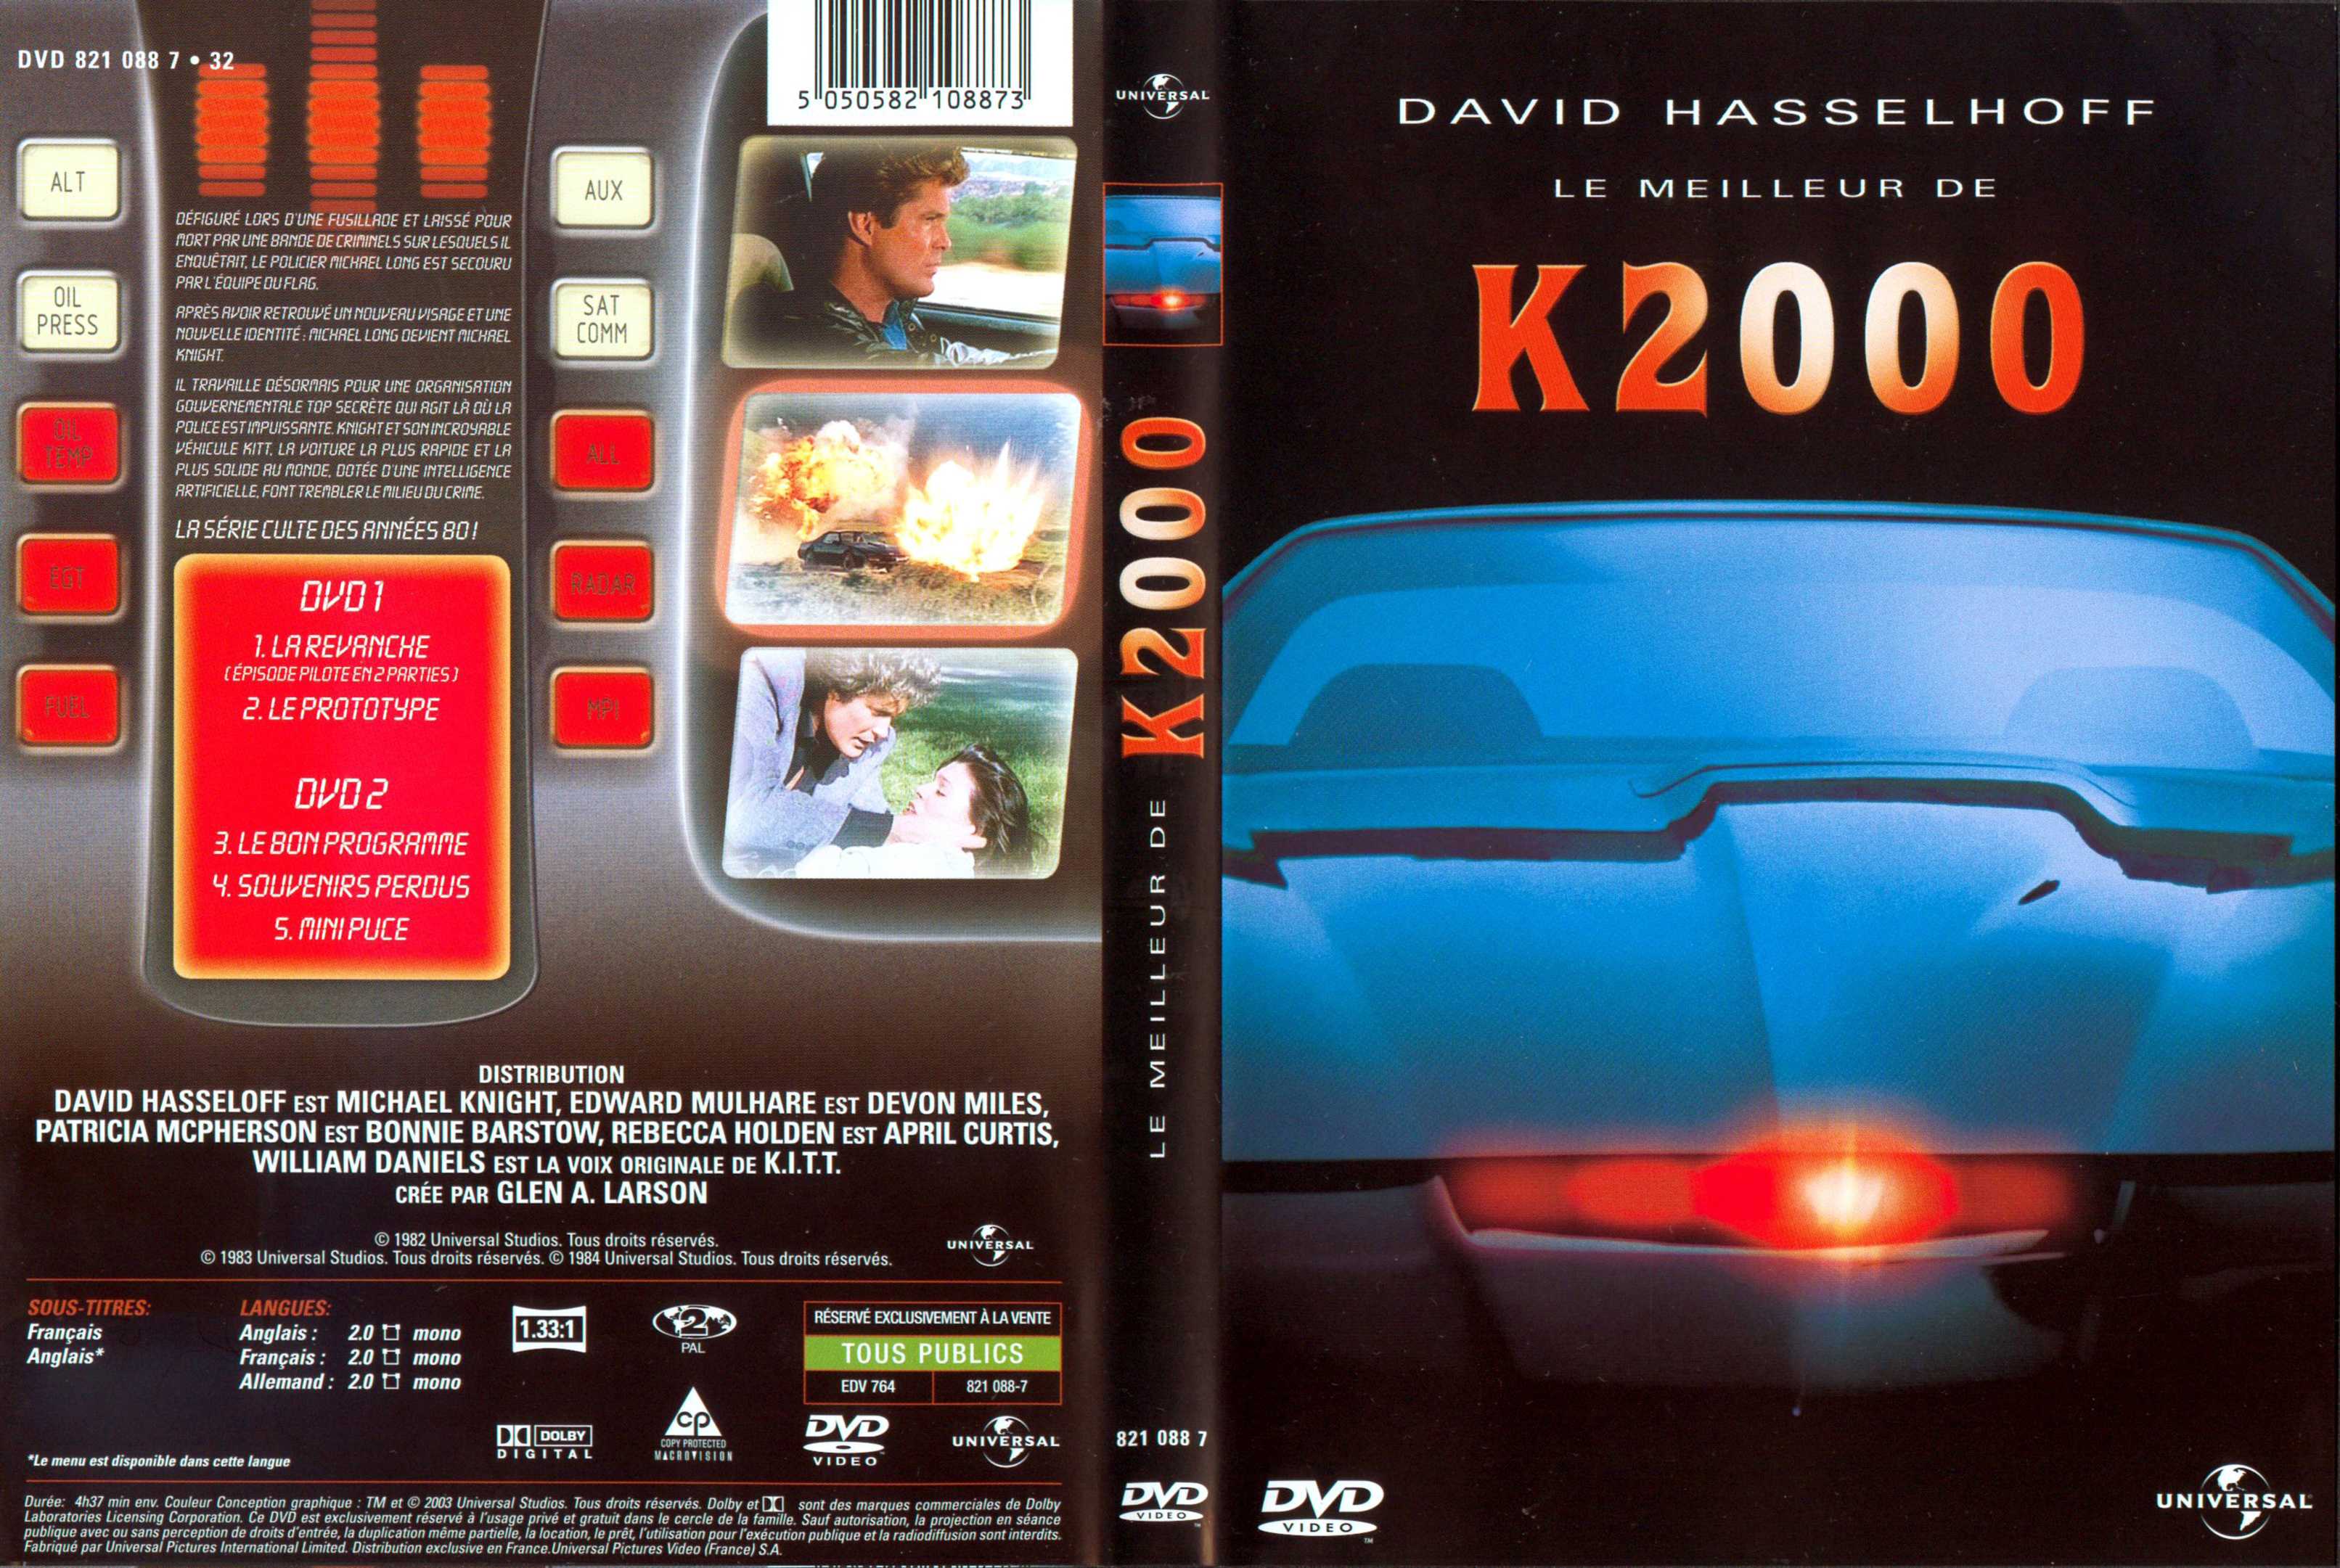 Jaquette DVD k 2000 le meilleur